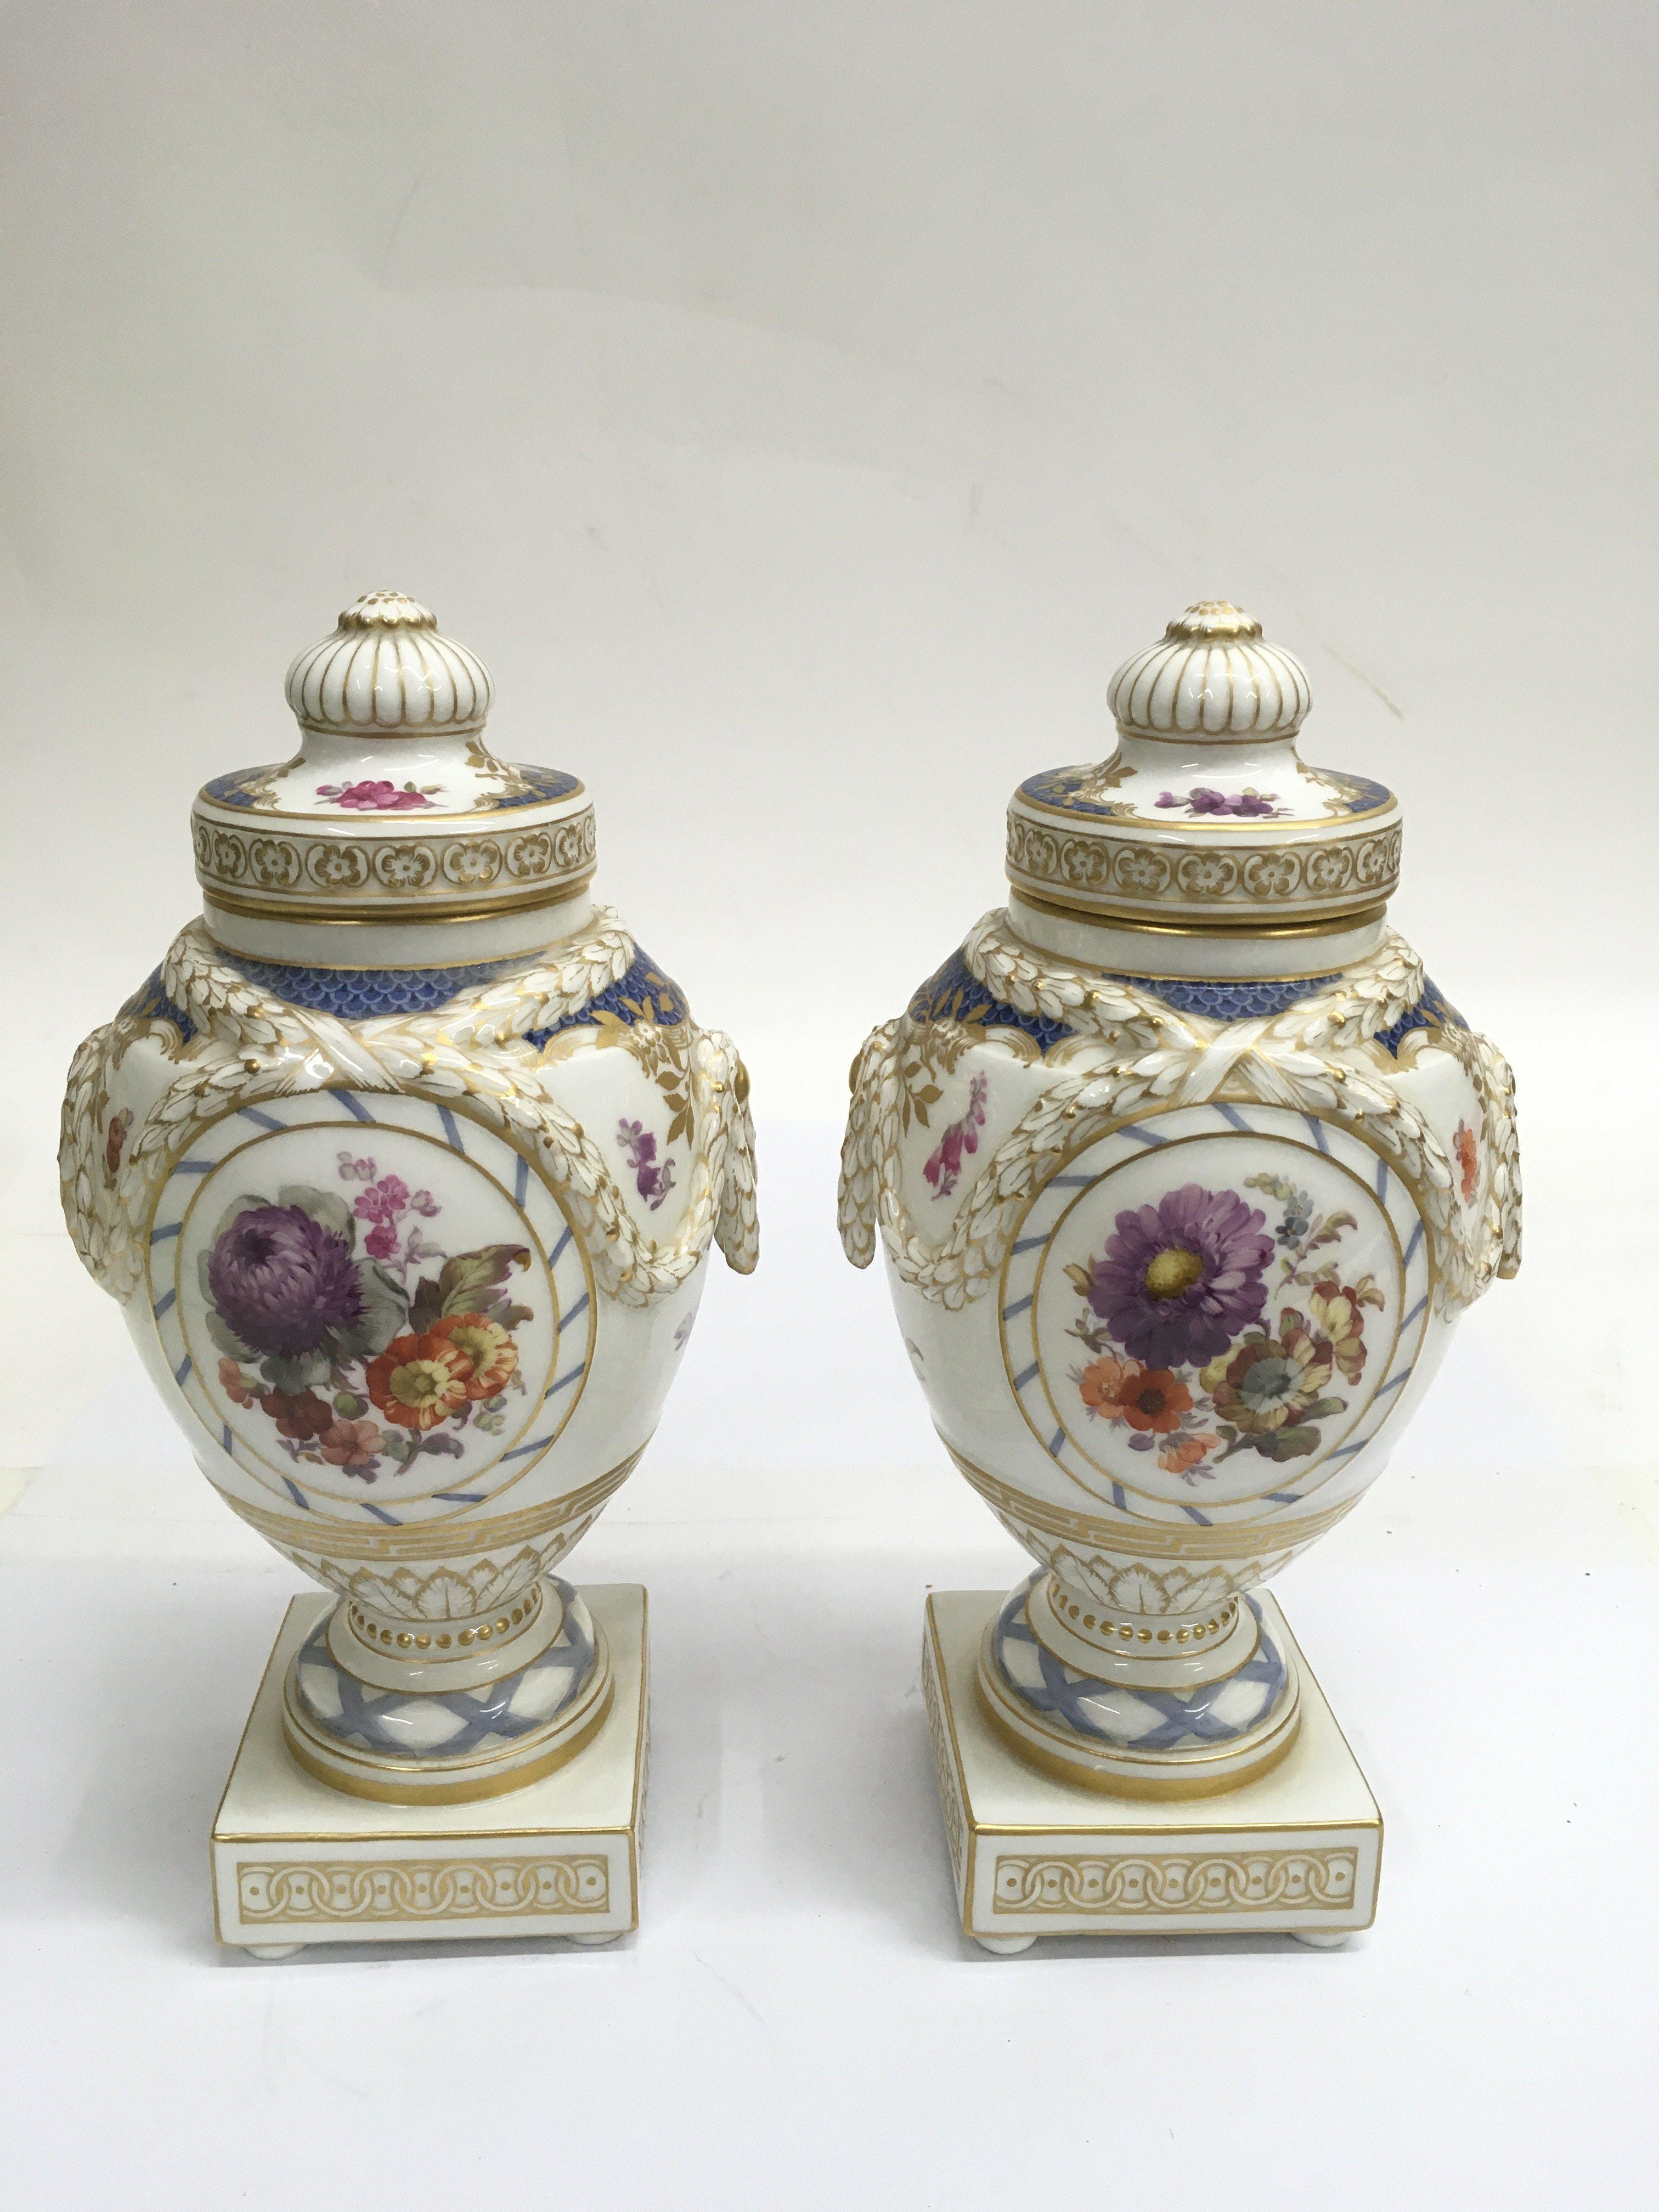 A fine pair of KPM porcelain lidded urns, of Class